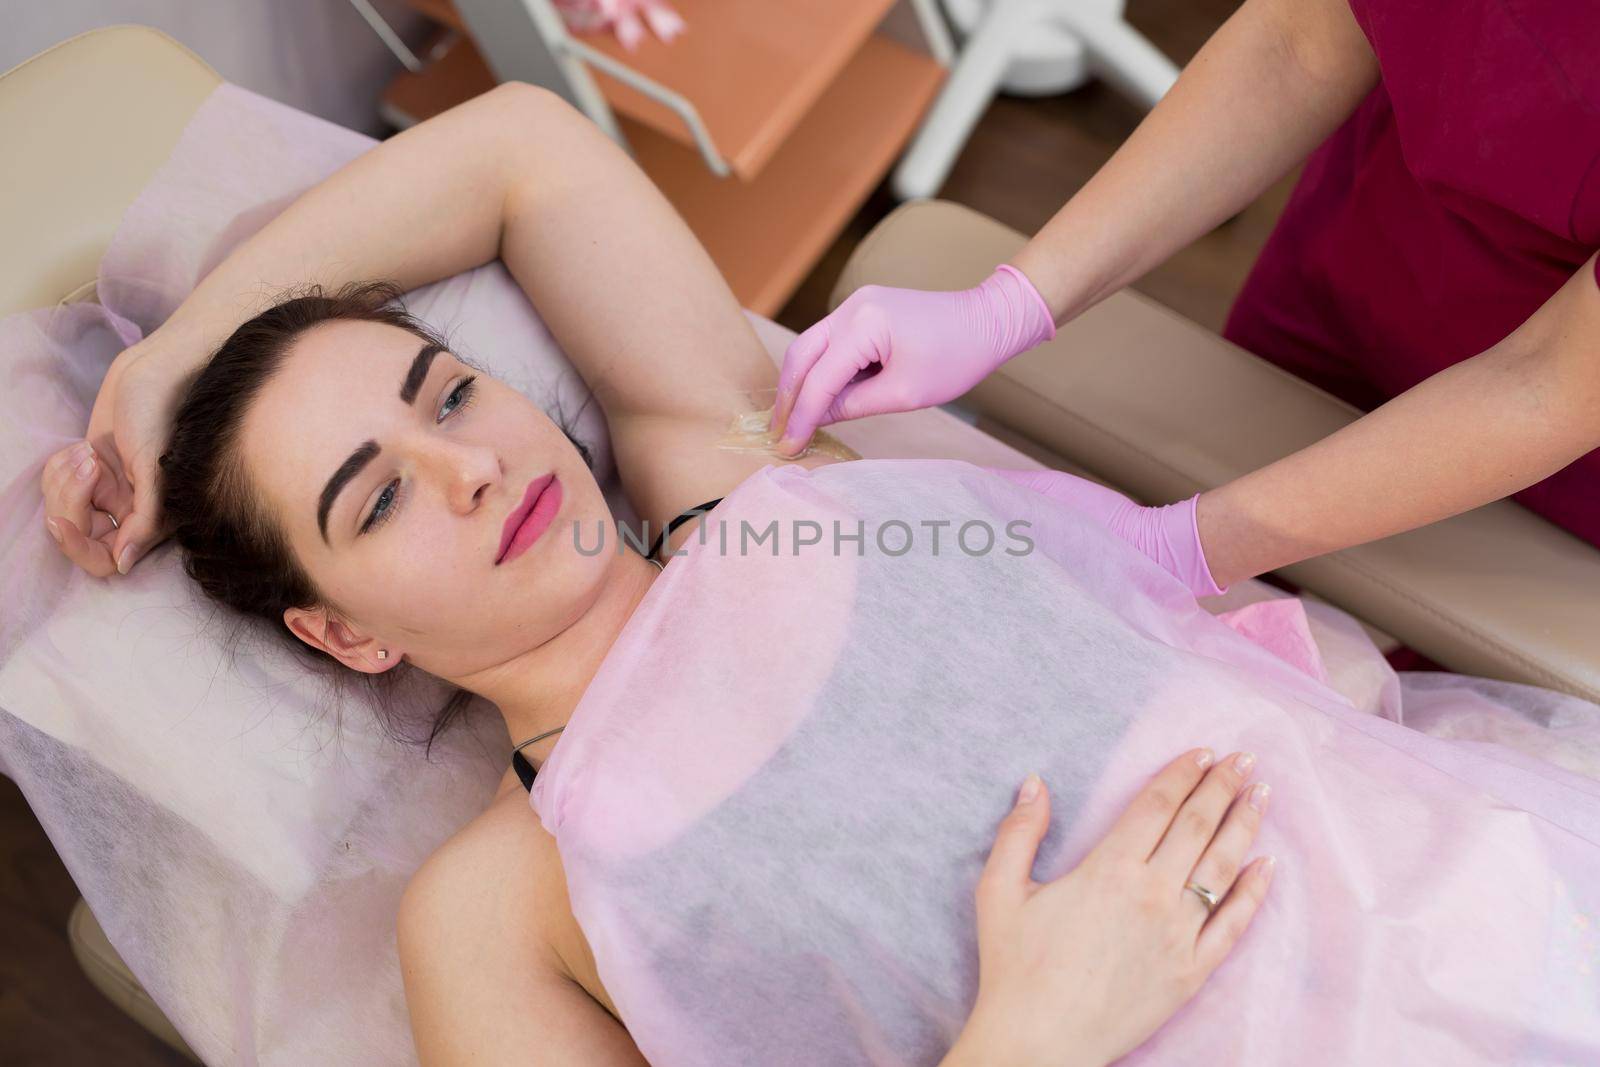 master of sugaring puts paste on the girl's armpits. Professional woman at spa beauty salon doing epilation armpits using sugar. Sugaring